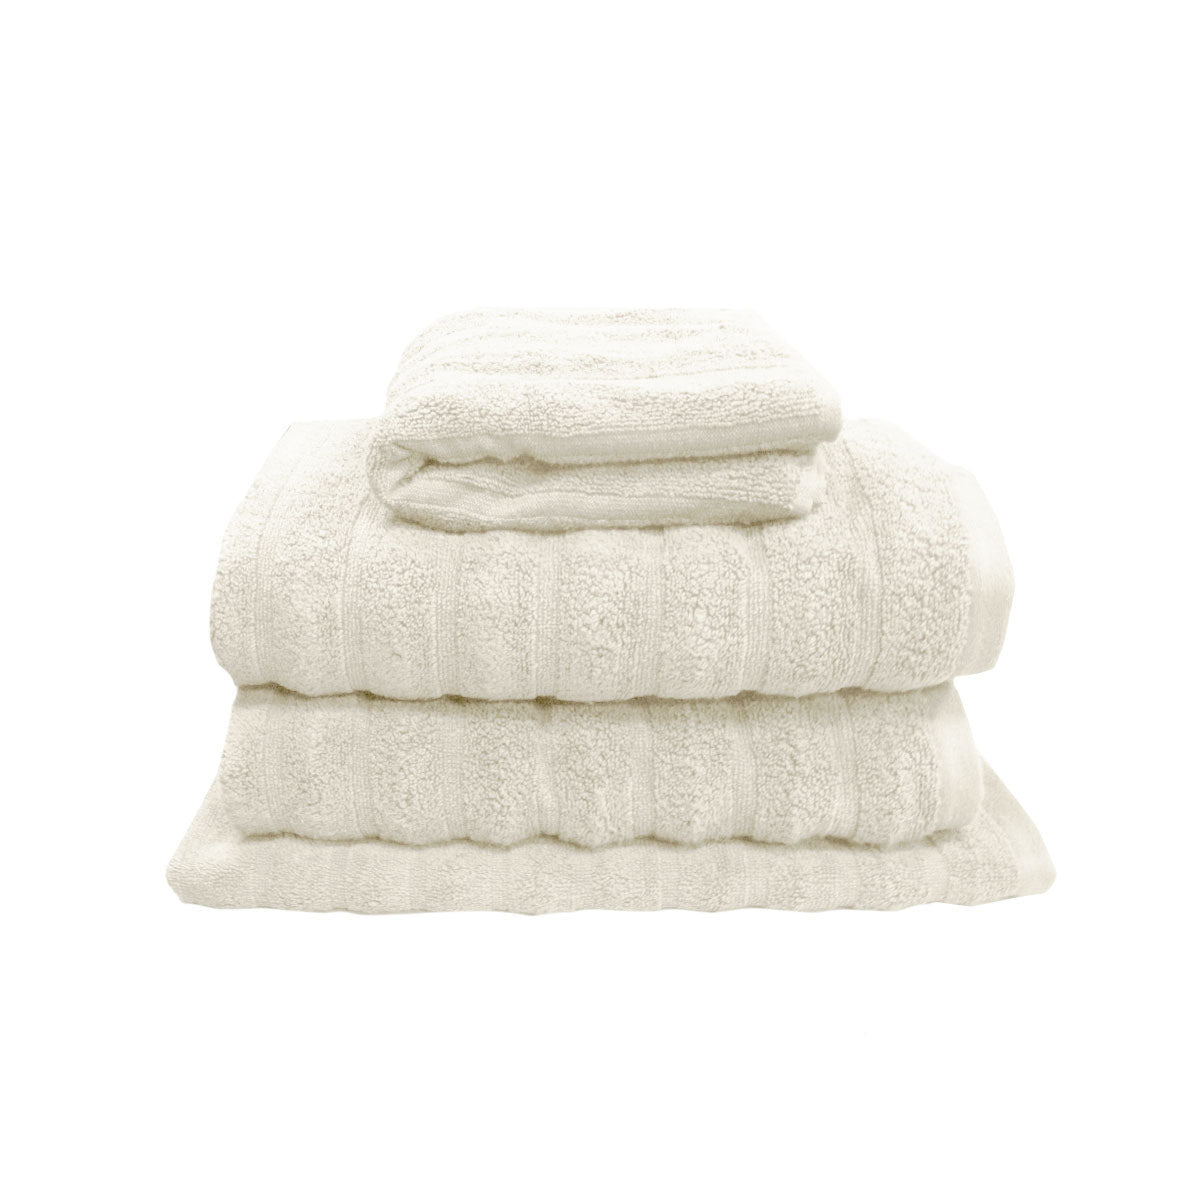 J Elliot Home Set of 4 George Collective Cotton Bath Towel Set Snow - BM House & Garden